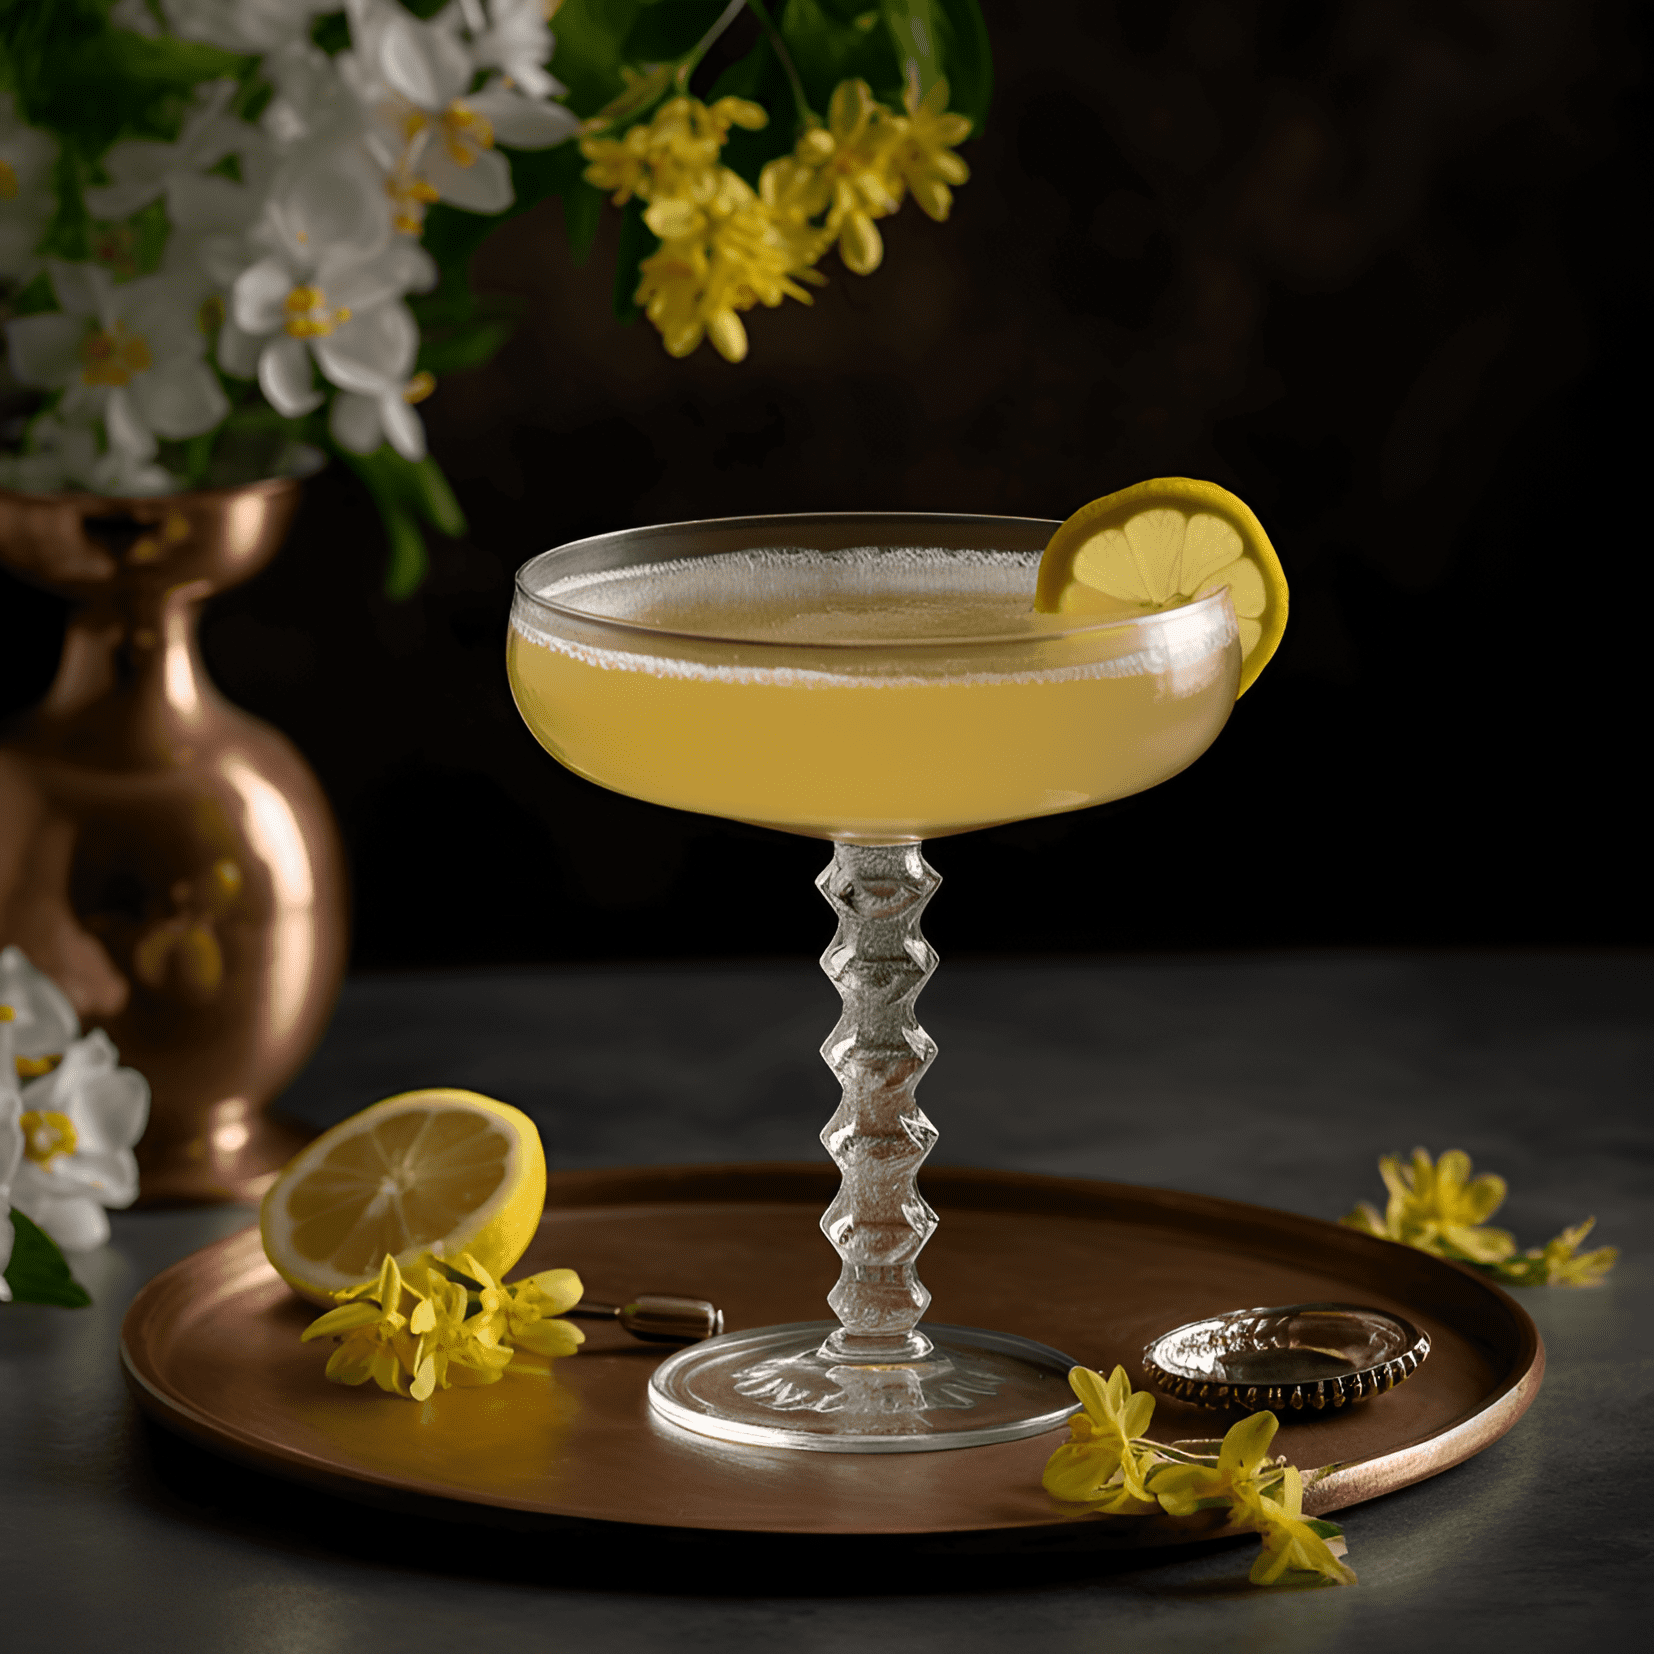 El cóctel Bee's Knees es un equilibrio delicioso de sabores dulces, ácidos y florales. El jarabe de miel agrega una dulzura rica, mientras que el jugo de limón proporciona una acidez refrescante y picante. Los botánicos del gin brillan, dando a la bebida un sabor complejo y satisfactorio.